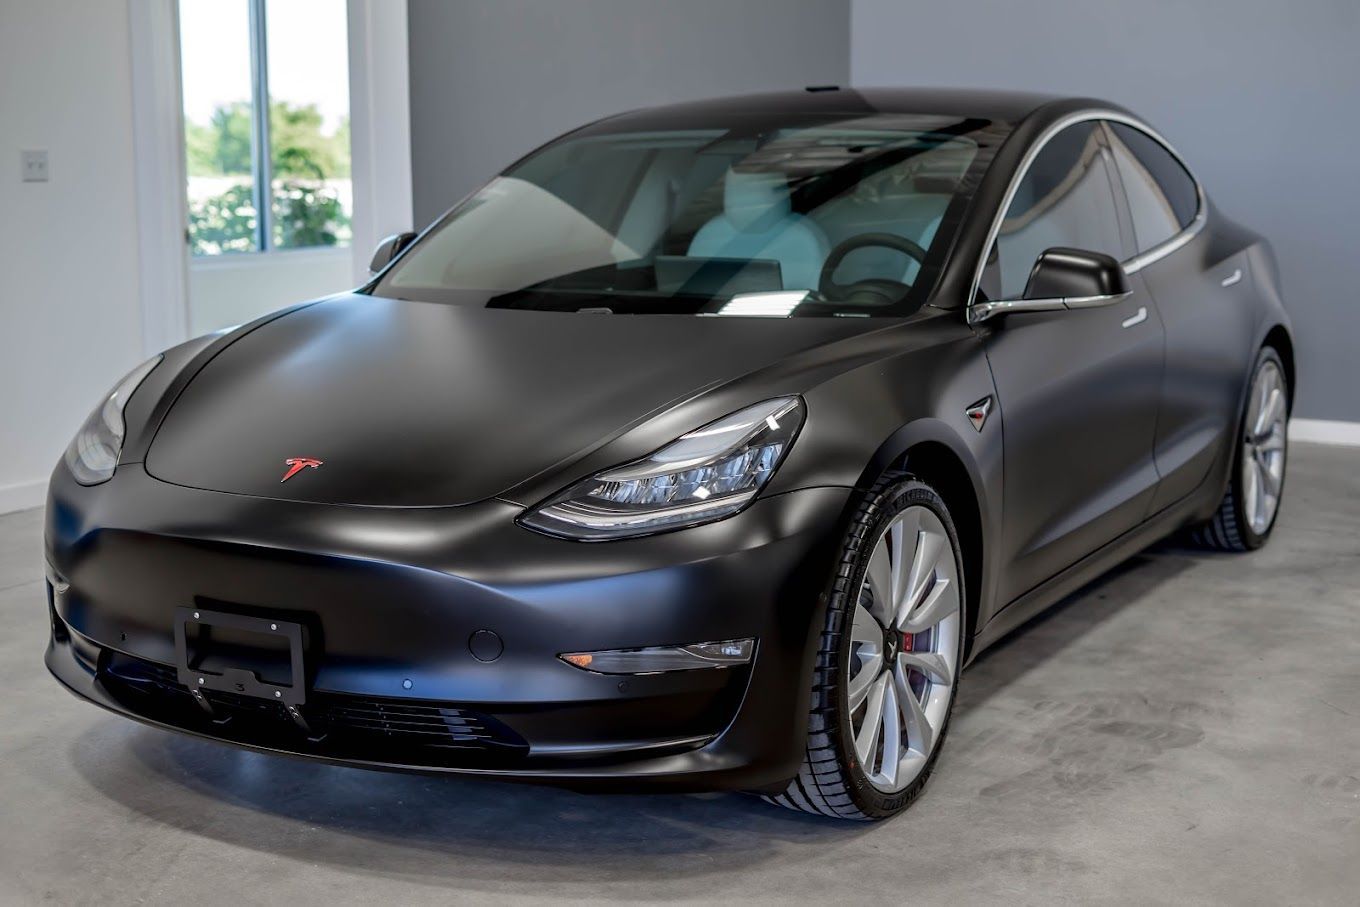 Tesla PPF car parked indoors